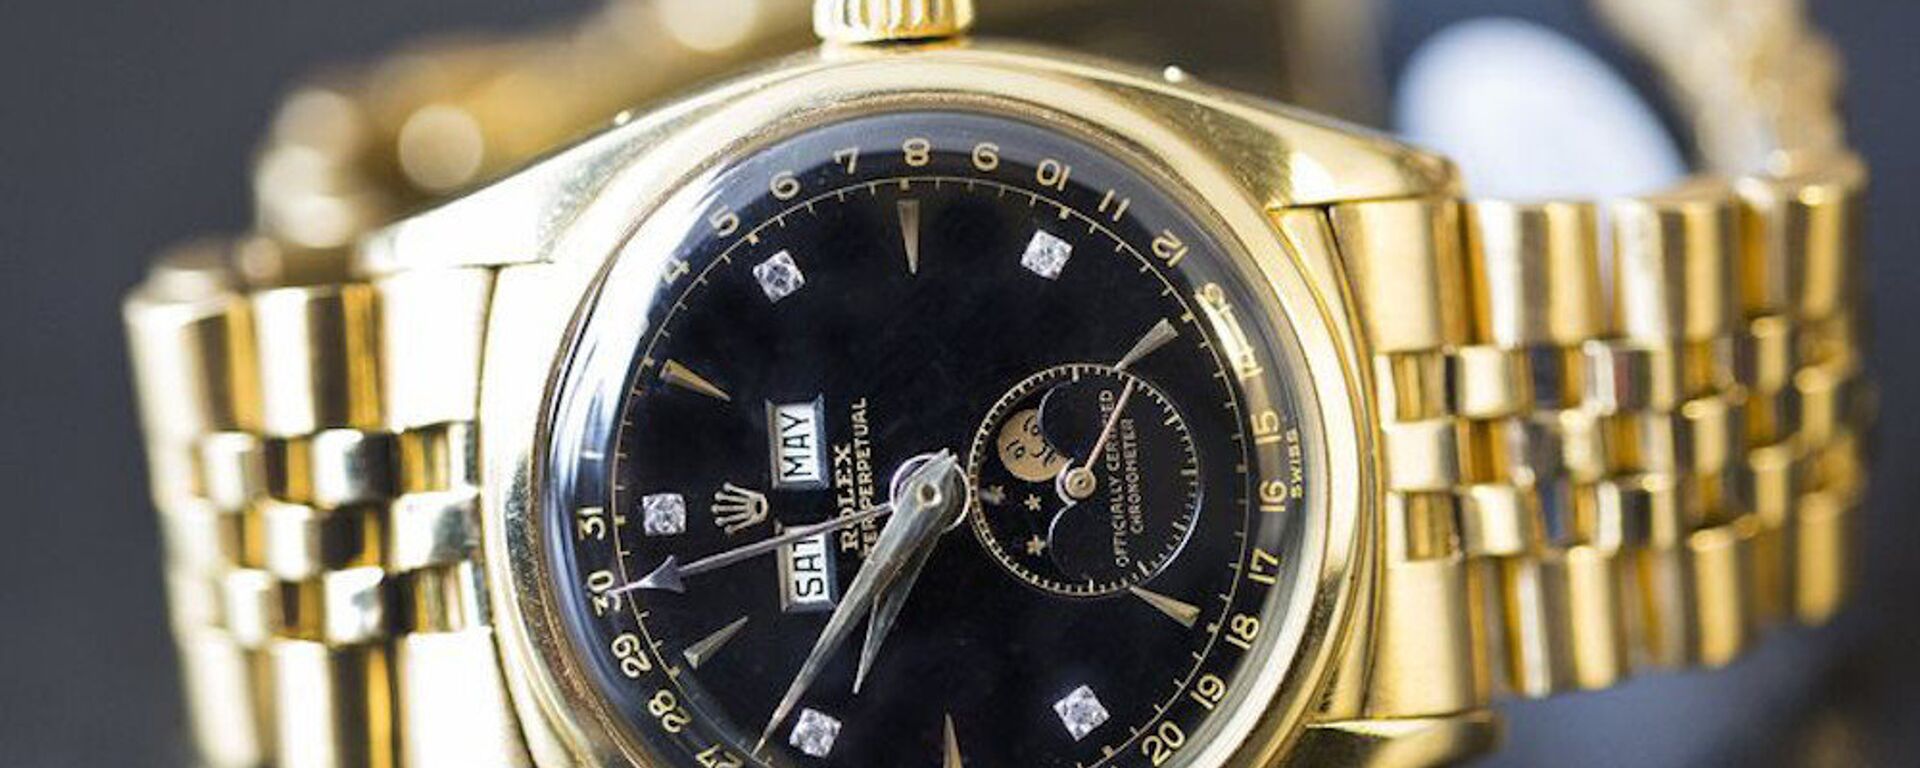 Vua Bảo Đại mua chiếc đồng hồ Rolex đắt giá nhất thế giới như thế nào? - Sputnik Việt Nam, 1920, 18.05.2017